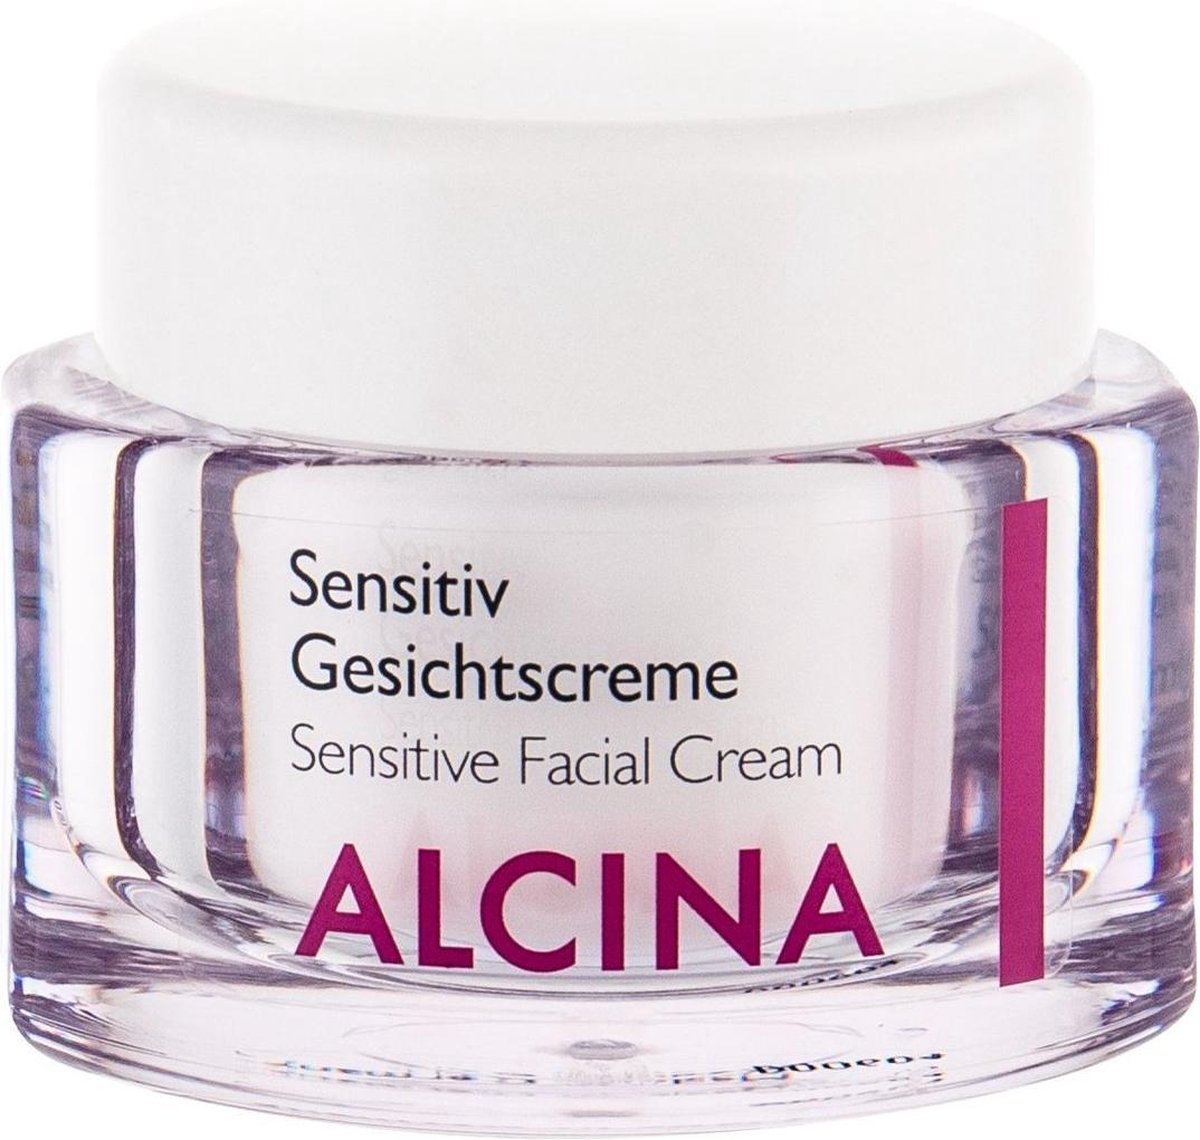 Alcina - ( Sensitiv e Facial Cream) 50 ml - 50ml